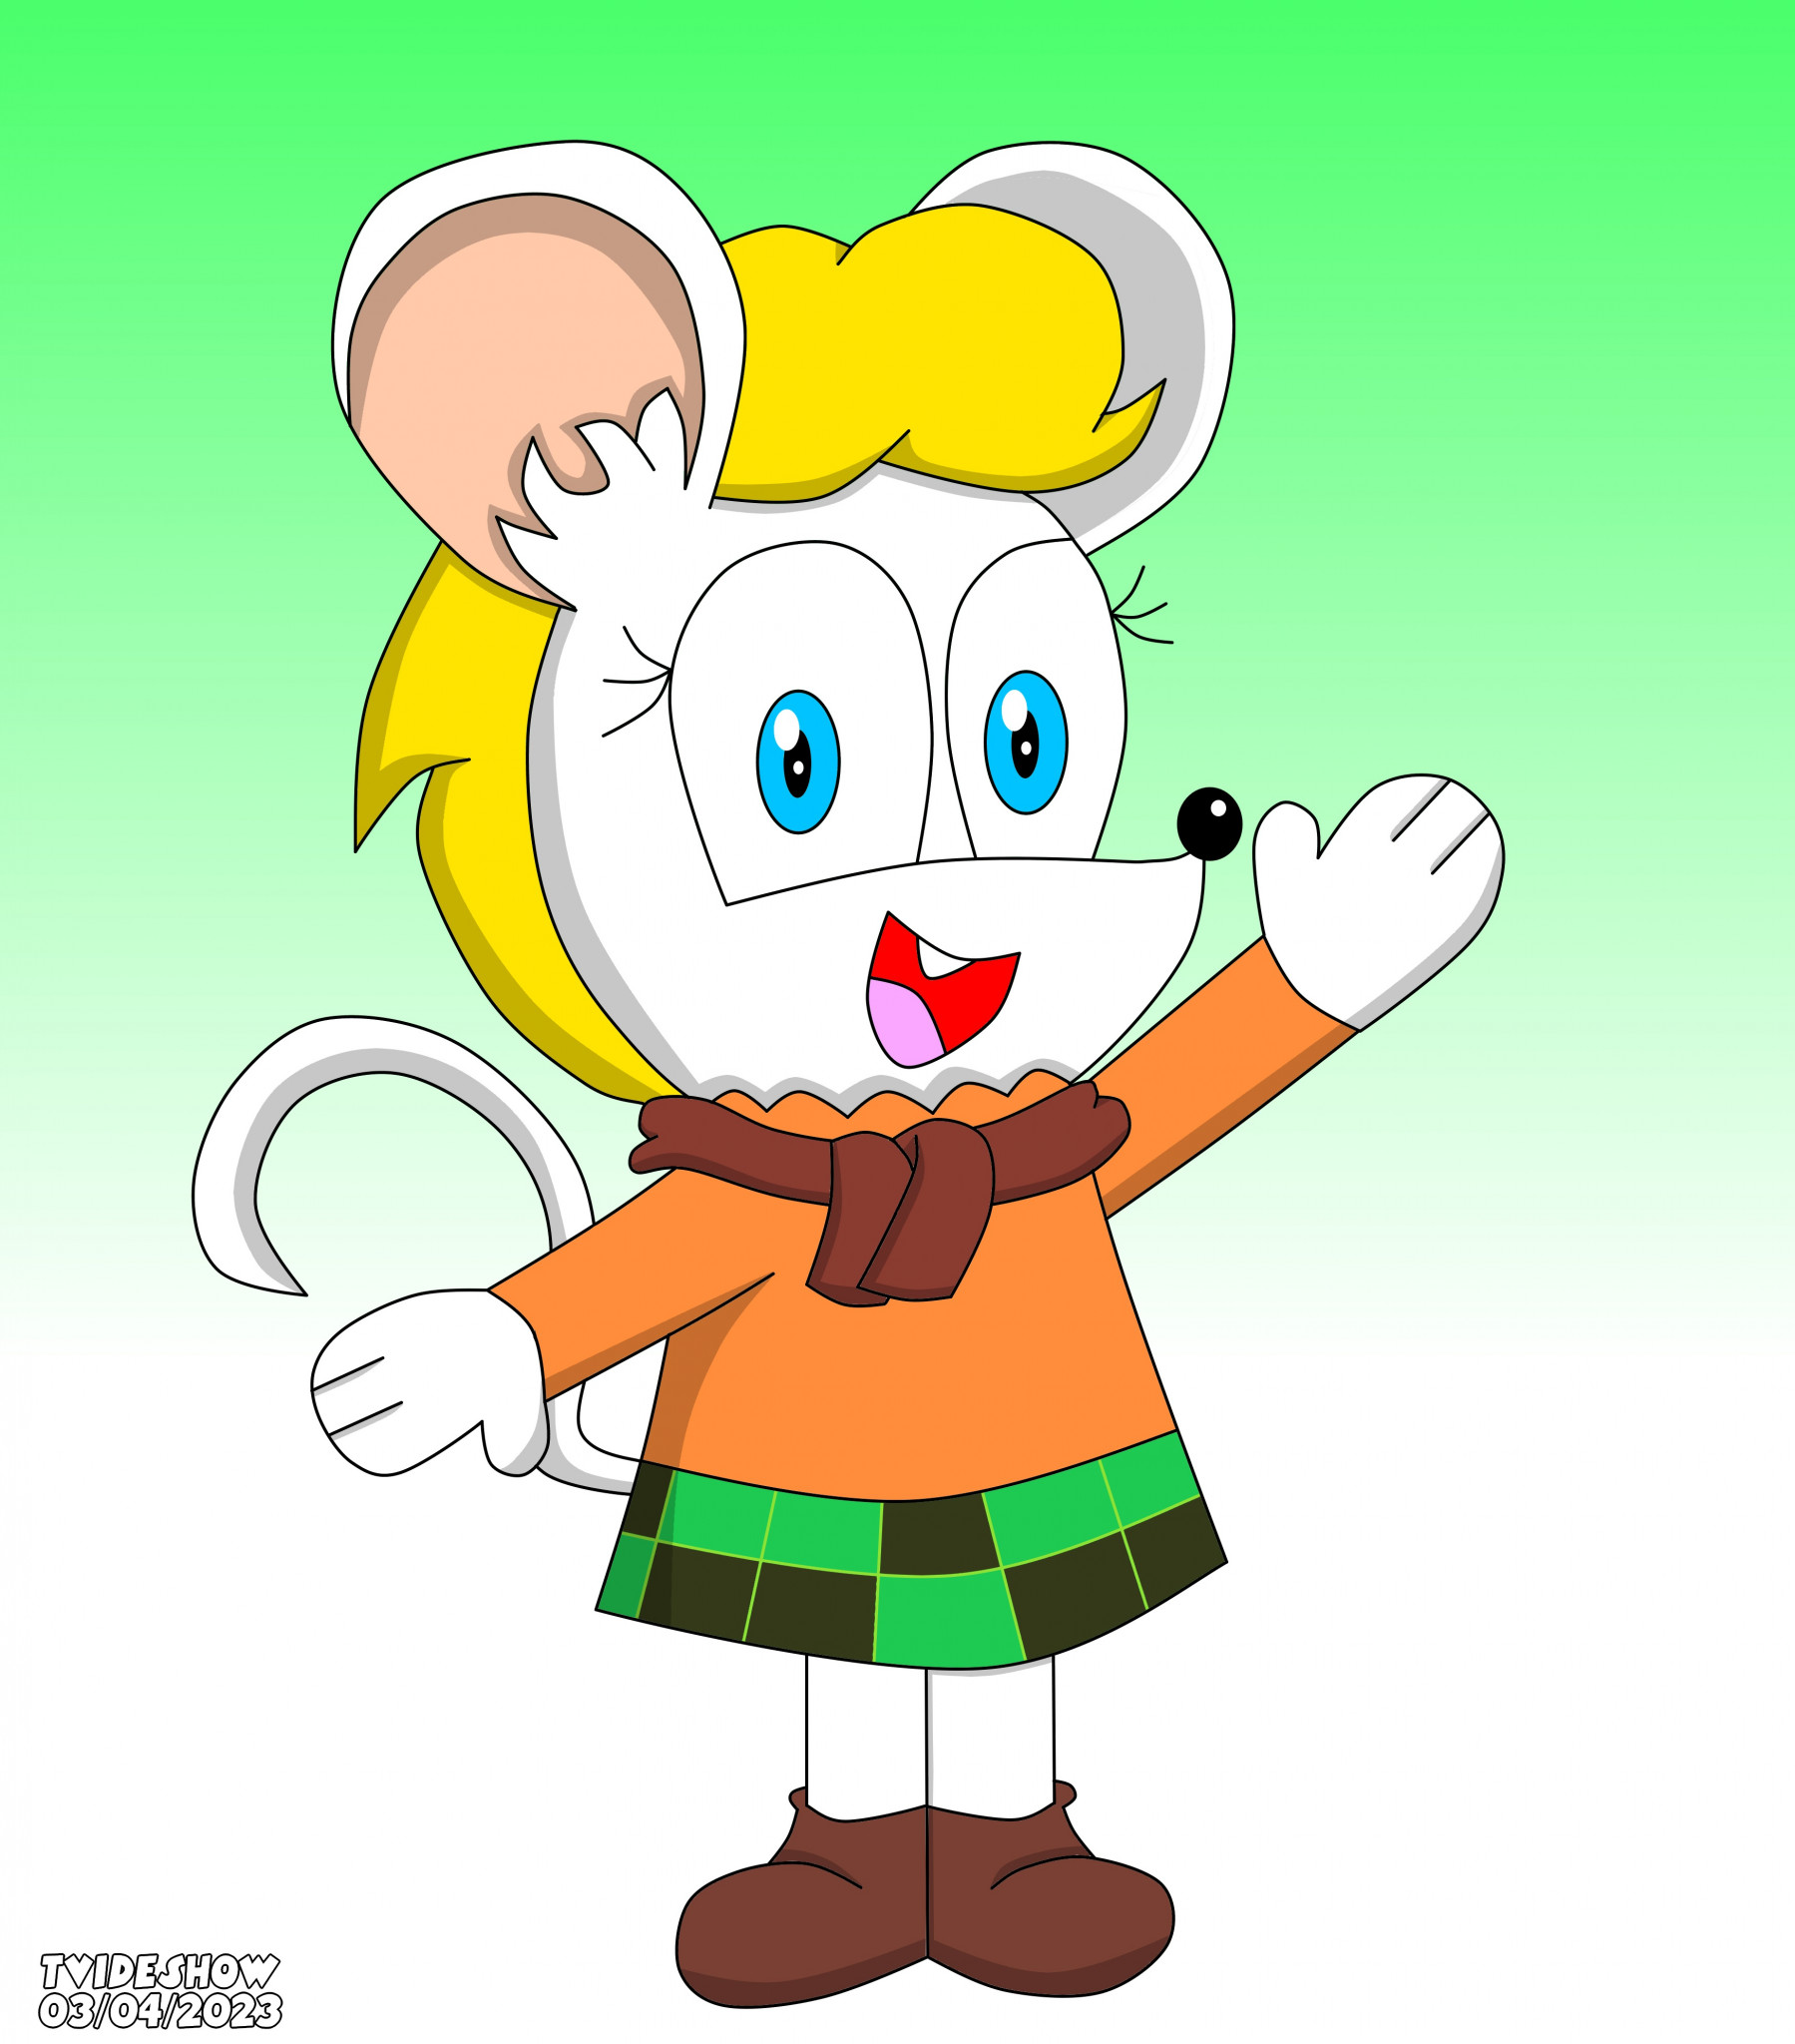 tiny Ashley, Ashley Graham as A Mouse (Moushly / Moushley)